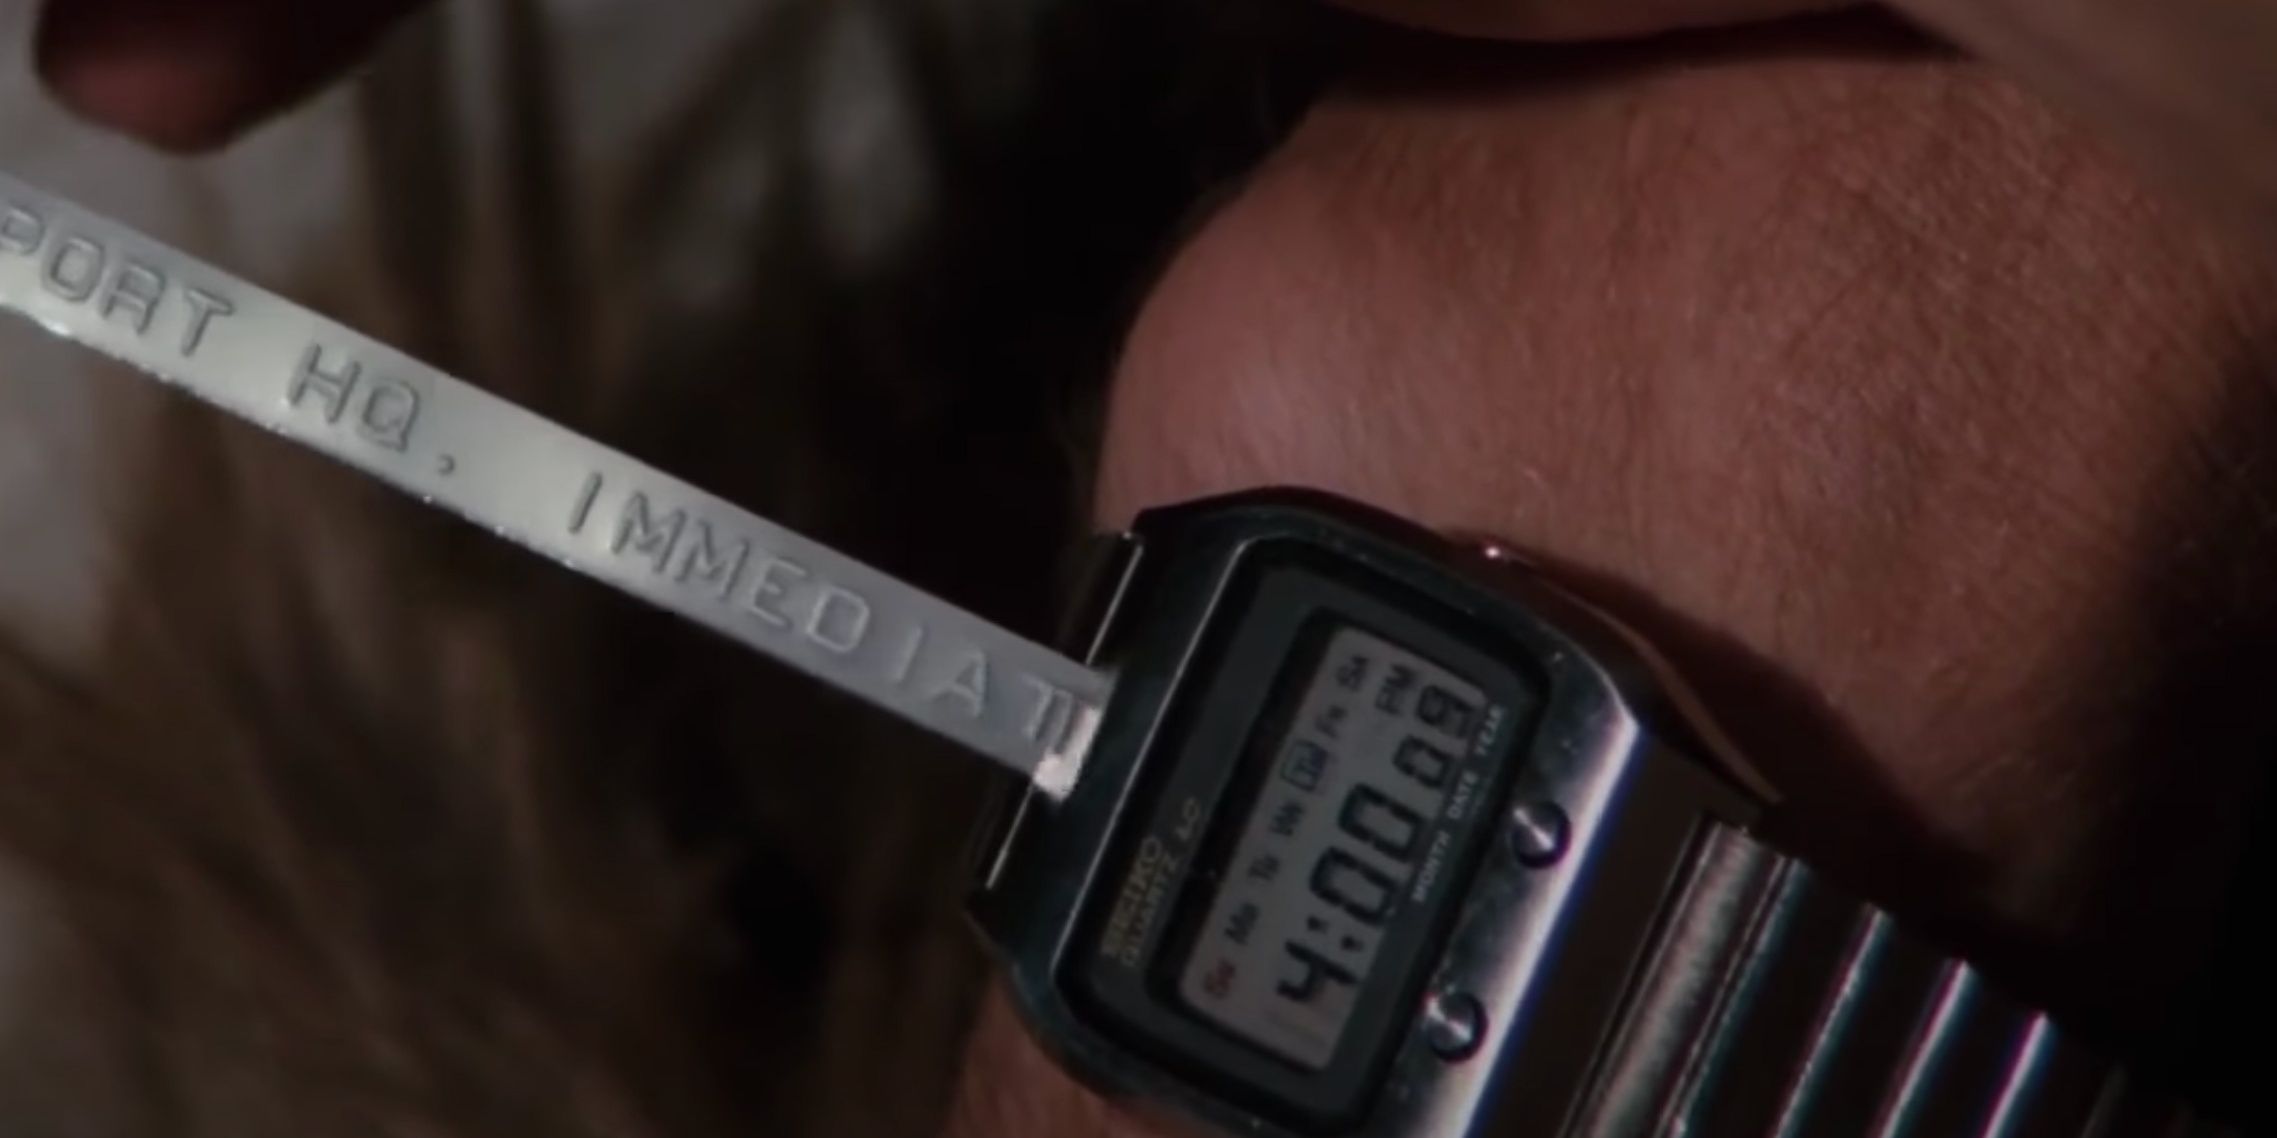 Le message ticker de la montre-bracelet numérique James Bonds dans L'Espion qui m'aimait